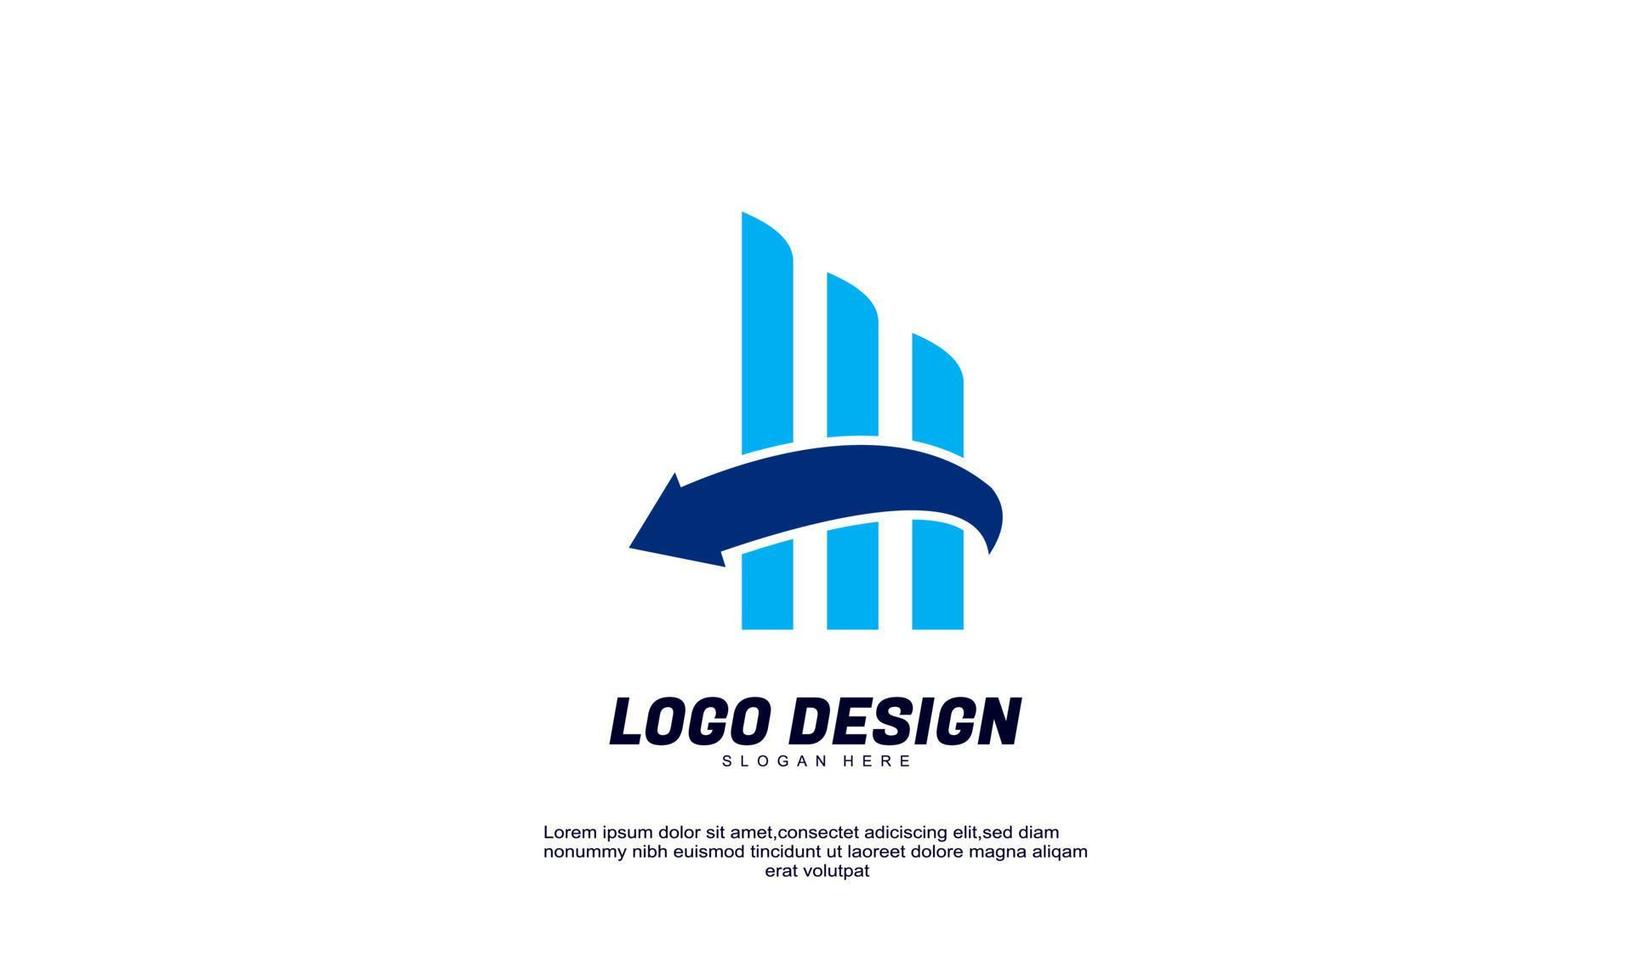 geweldig creatief logo idee financiën voor merkidentiteit bedrijf zakelijk of zakelijk kleurrijk ontwerpsjabloon vector